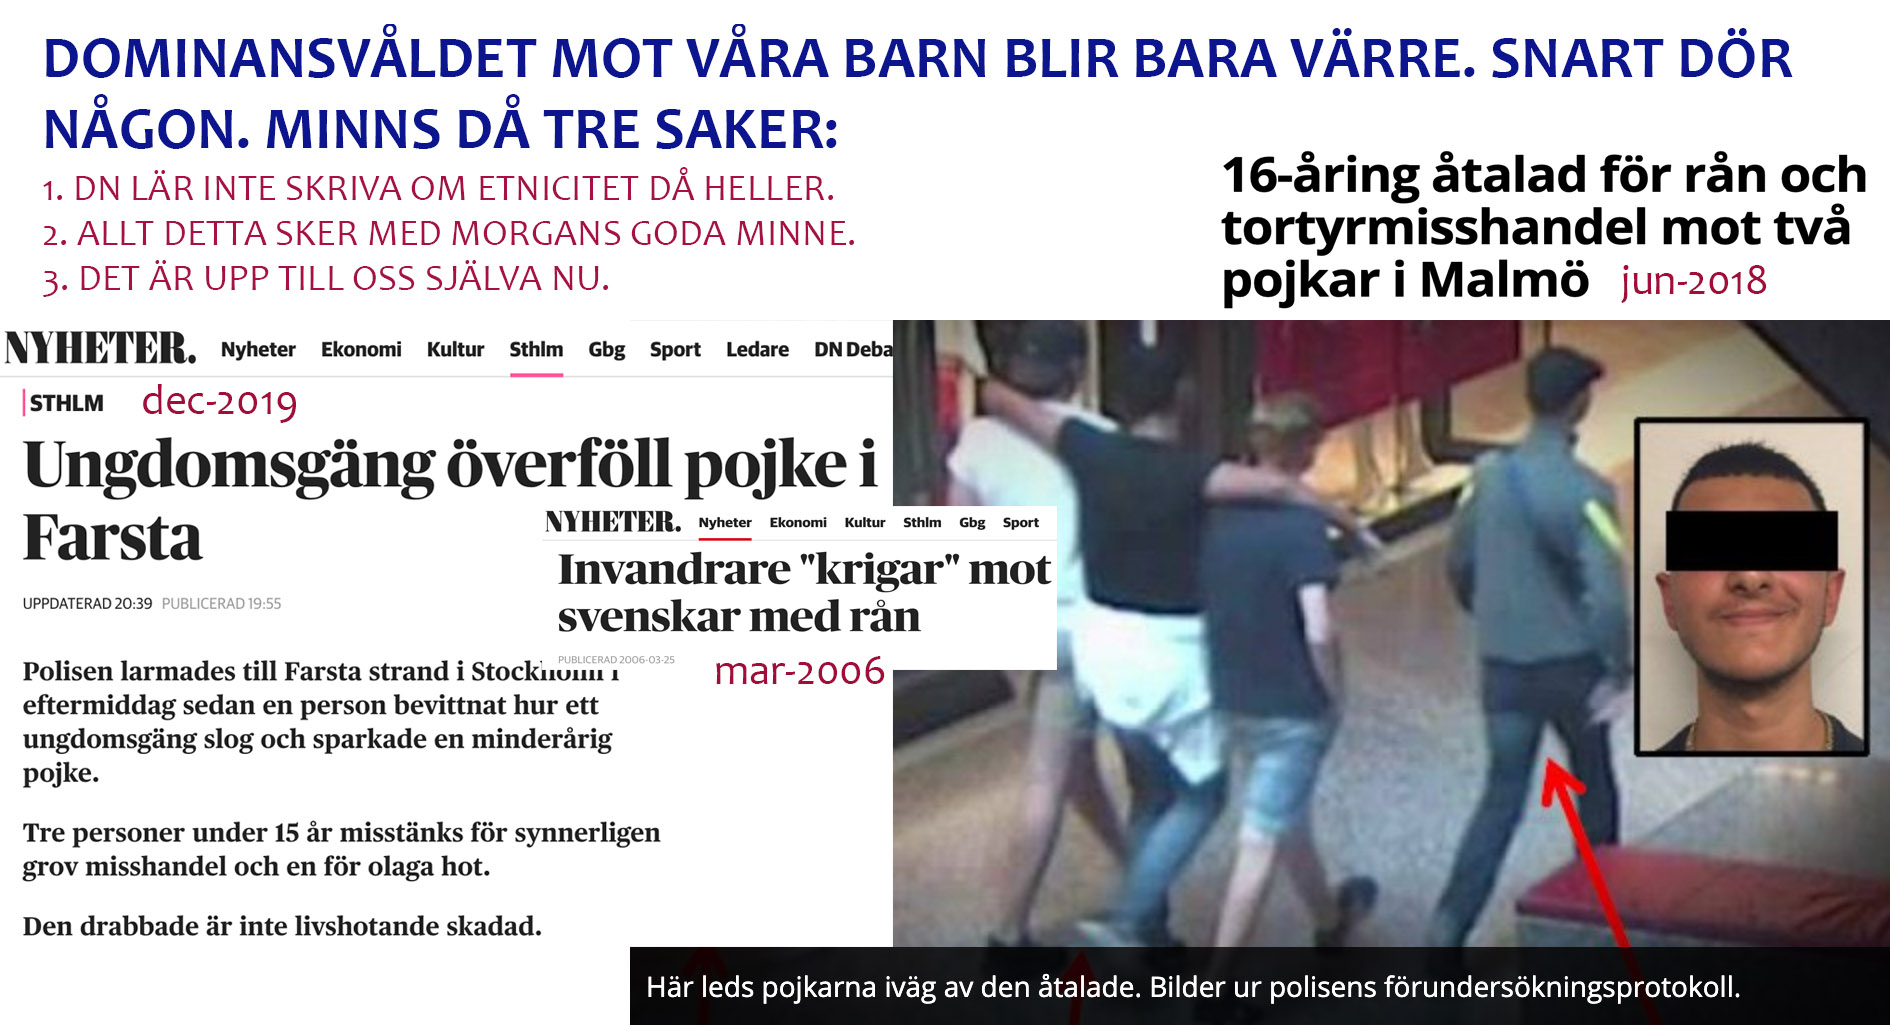 Ännu en ‘synnerligen grov misshandel’ av ett svenskt barn. De tio som sparkade var kanske inte alls invandrare (0,01% chans på det).